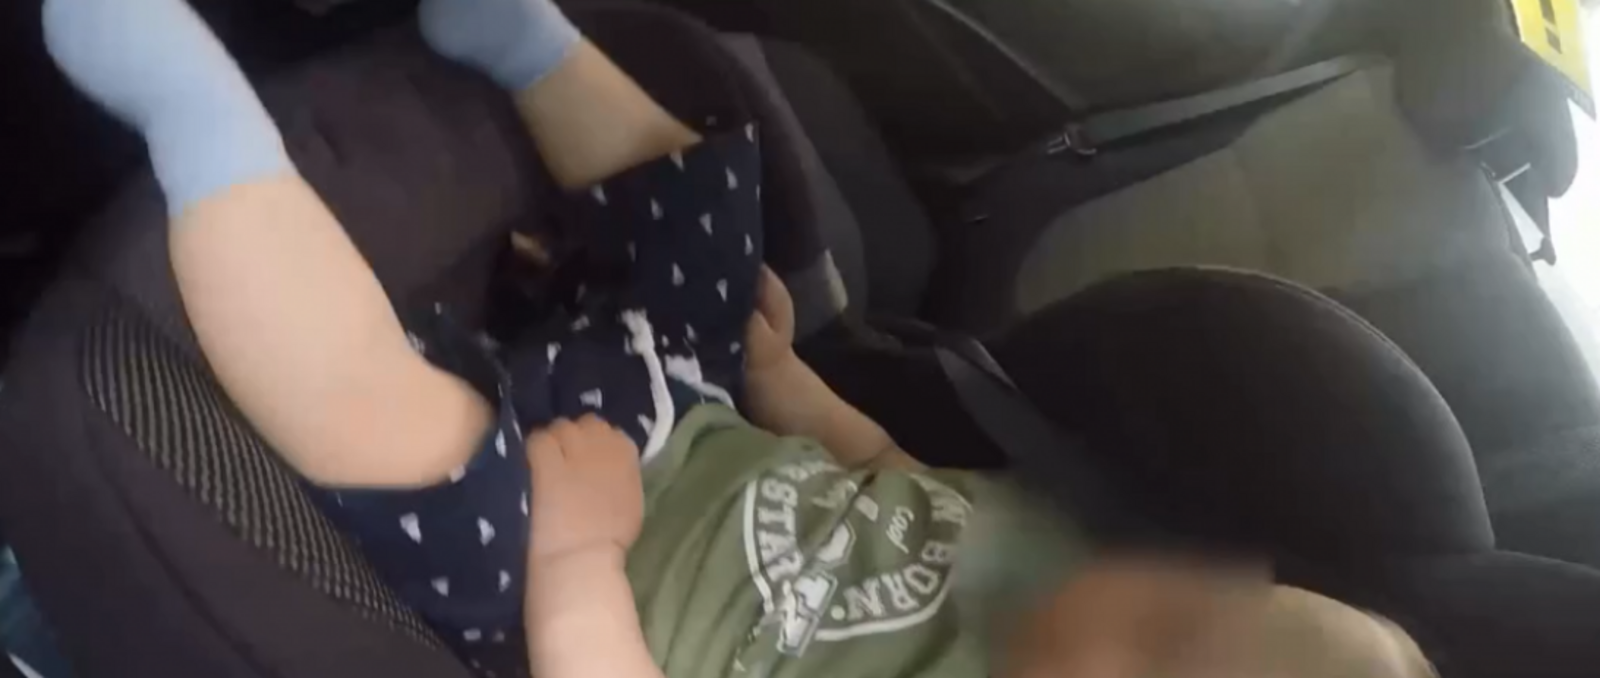 Ребенок оказался закрыт в автомобиле на 30-градусной жаре